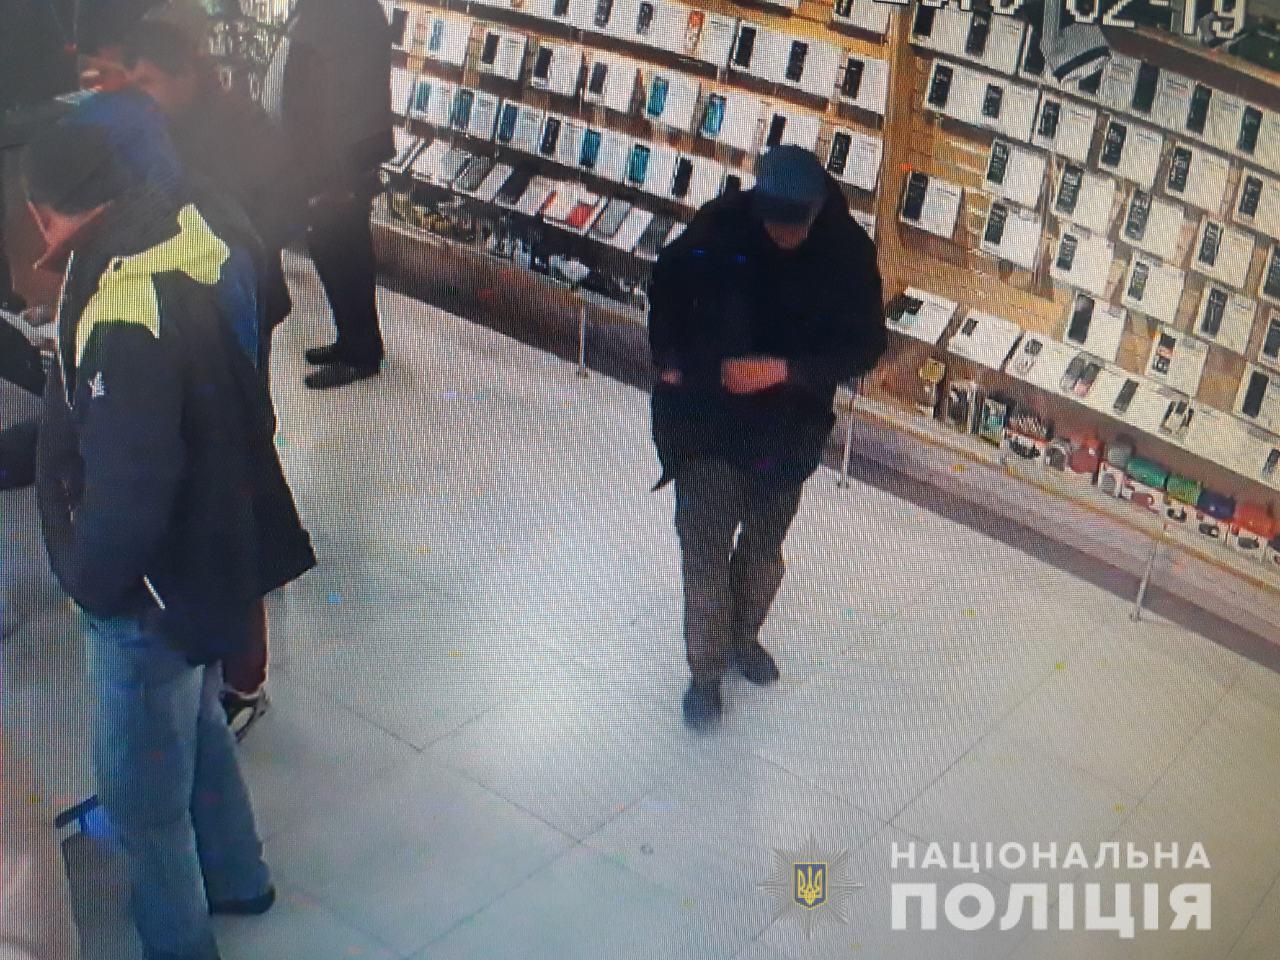 Працівники Тячівського та Свалявського відділів поліції встановили особи чоловіка та дівчини, які причетні до вчинення крадіжок чужого майна.